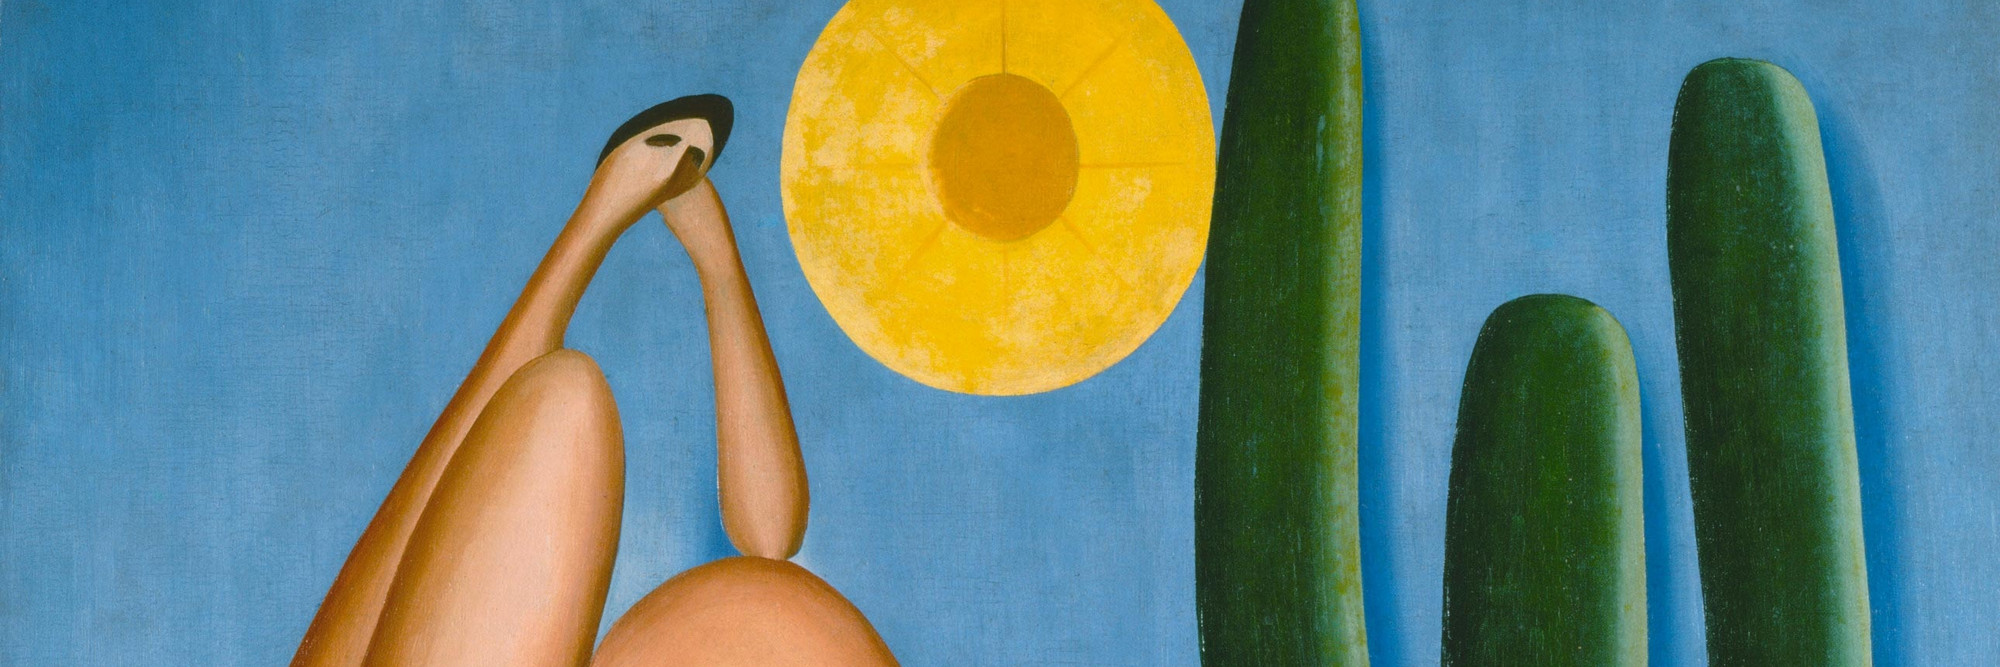 Tarsila do Amaral. Abaporu. 1928. Oil on canvas, 33 7/16 x 28 3/4&#34; (85 x 73 cm). Collection MALBA, Museo de Arte Latinoamericano de Buenos Aires. © Tarsila do Amaral Licenciamentos